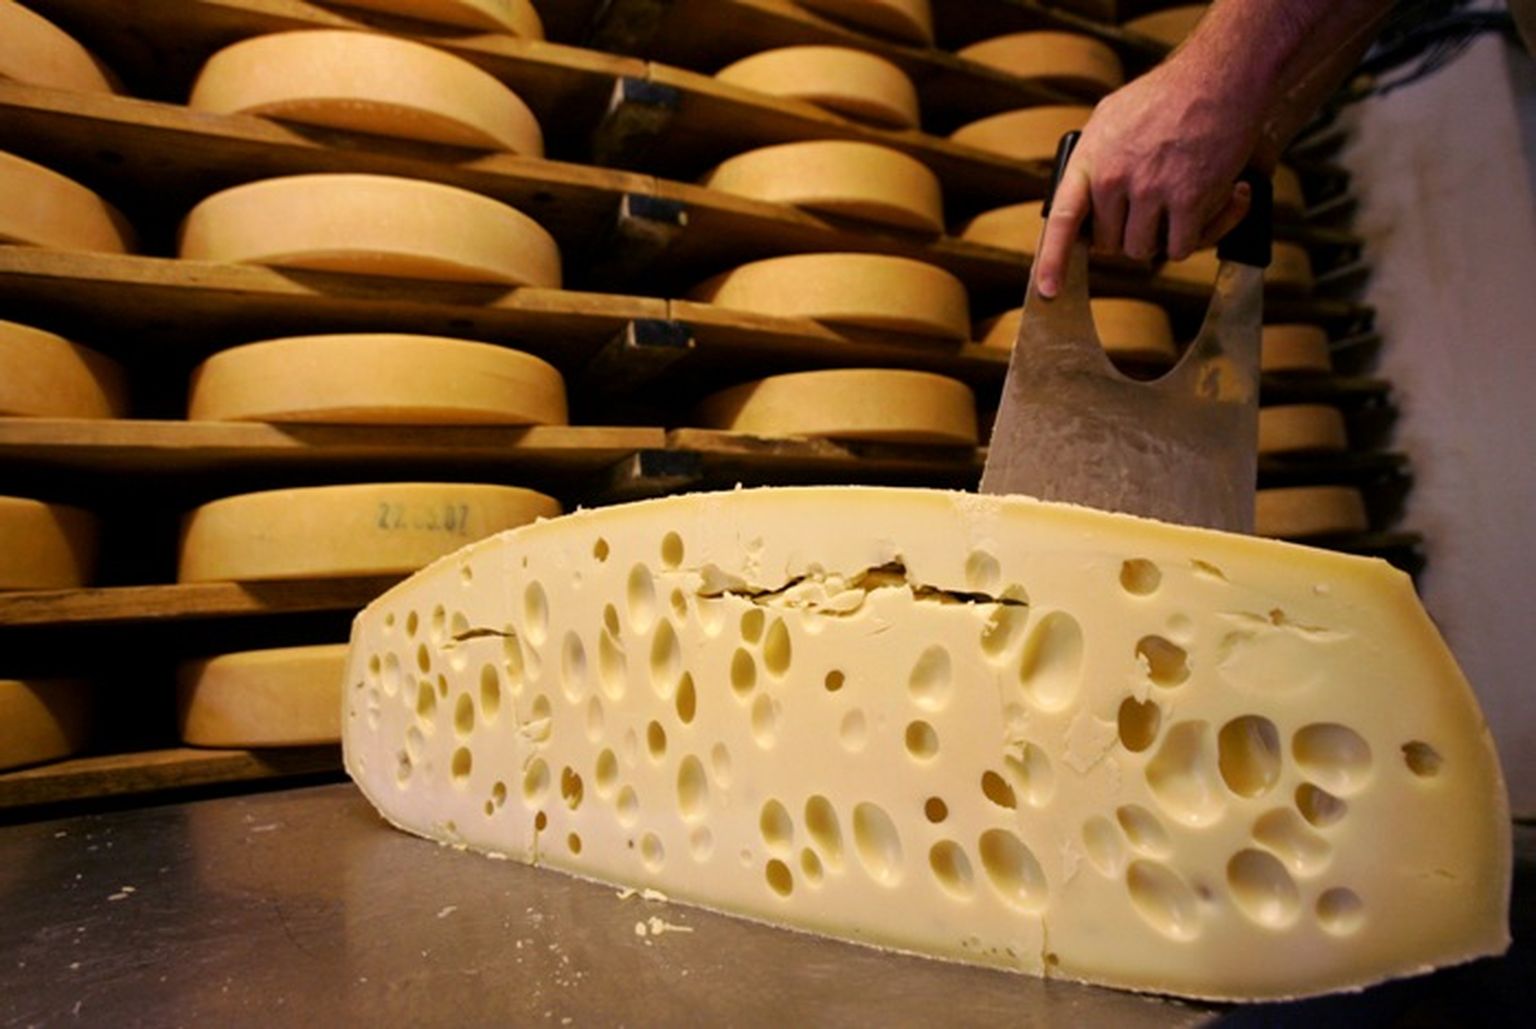 фото изготовления сыра